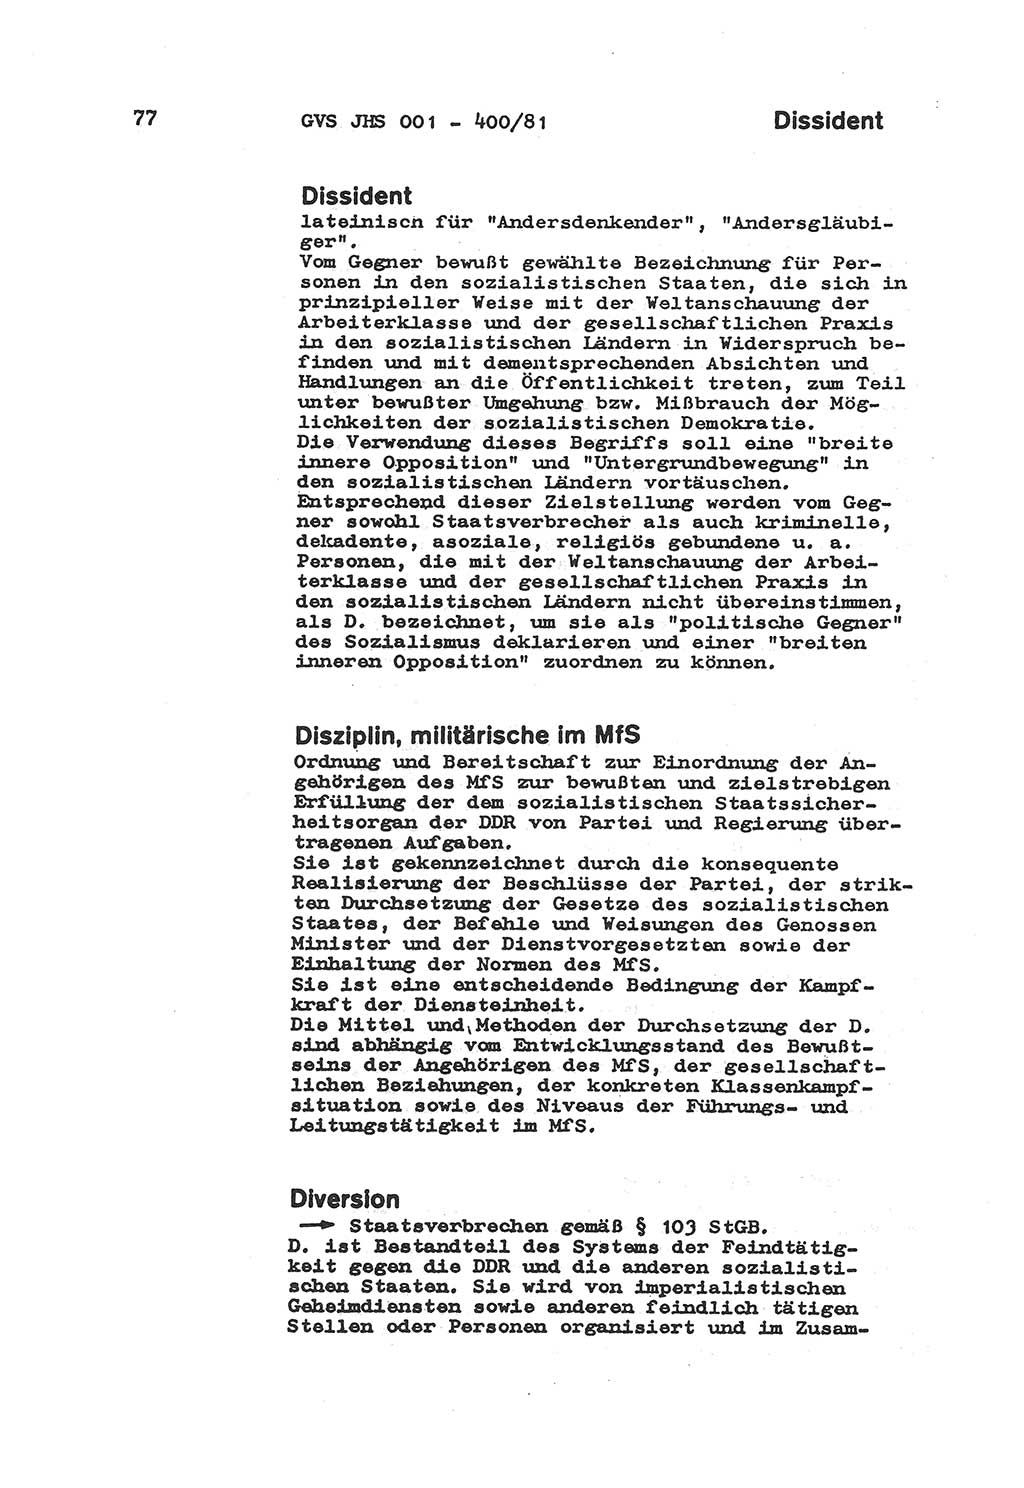 Wörterbuch der politisch-operativen Arbeit, Ministerium für Staatssicherheit (MfS) [Deutsche Demokratische Republik (DDR)], Juristische Hochschule (JHS), Geheime Verschlußsache (GVS) o001-400/81, Potsdam 1985, Blatt 77 (Wb. pol.-op. Arb. MfS DDR JHS GVS o001-400/81 1985, Bl. 77)